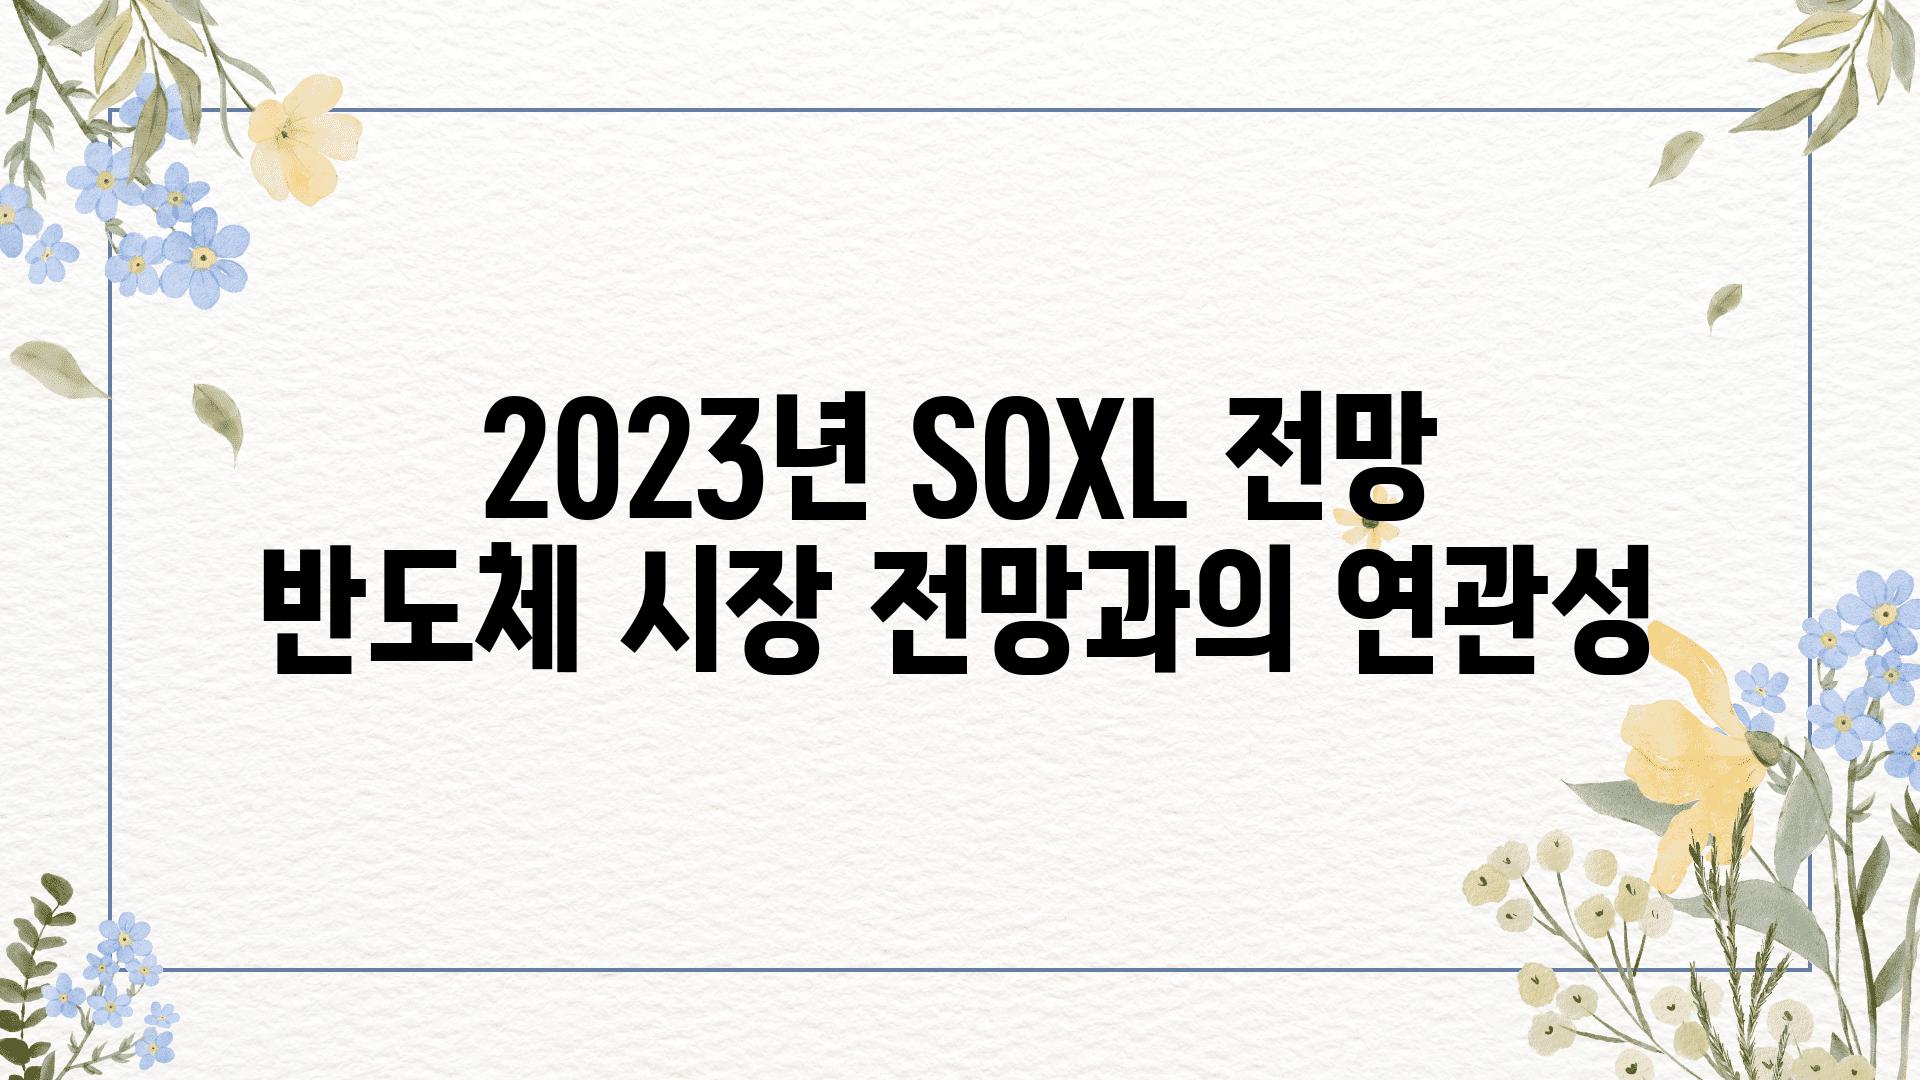 2023년 SOXL 전망 반도체 시장 전망과의 연관성